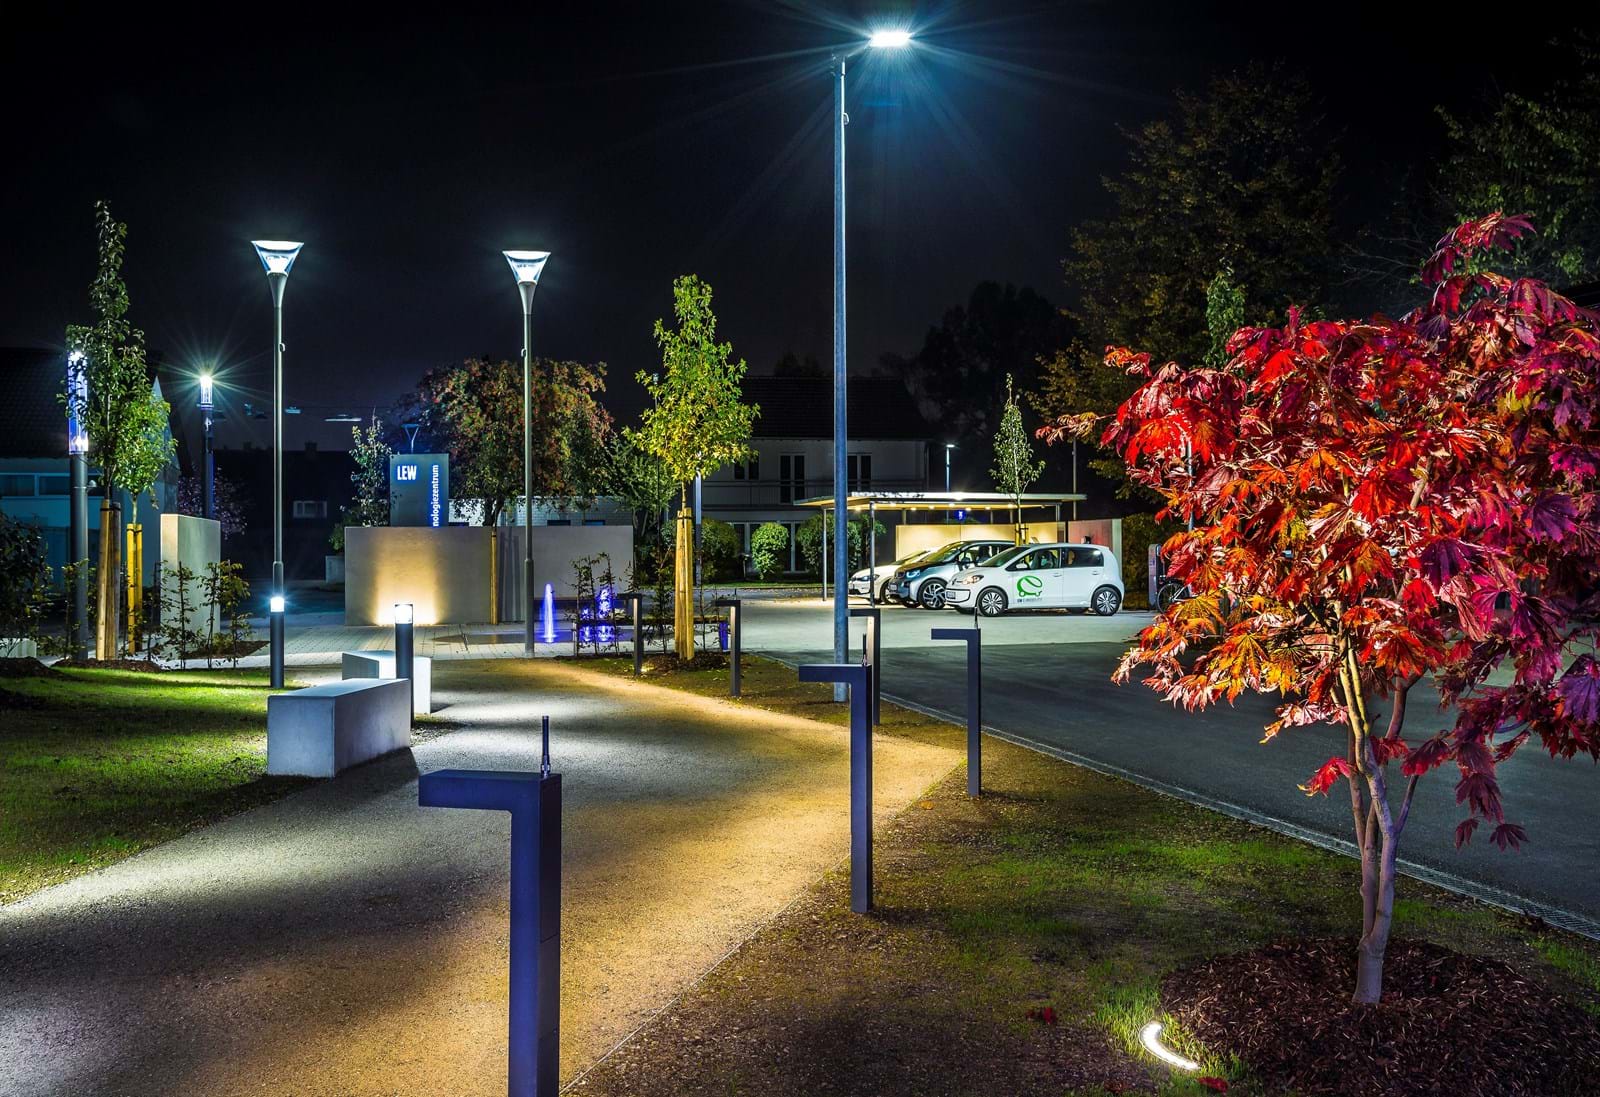 Im LEW Technologiezentrum dreht sich alles um innovative und energieeffiziente LED-Beleuchtungstechnik. Mehr als 100 verschiedene LED-Modelle befinden sich auf der 13.000 m² großen Ausstellungsfläche.